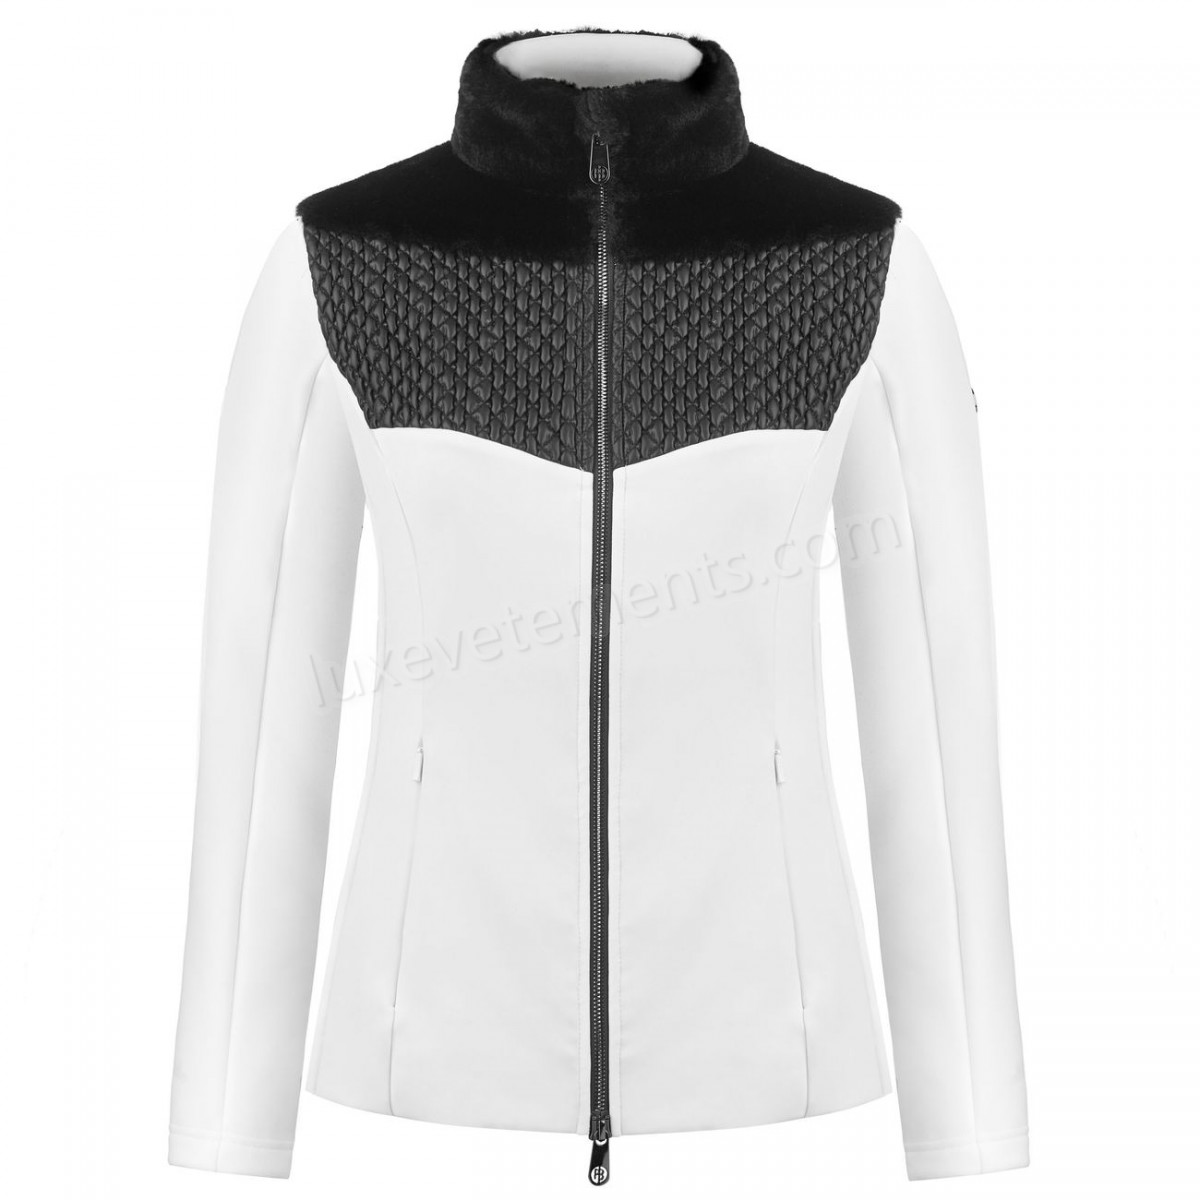 Poivre Blanc-Sports d'hiver femme POIVRE BLANC Veste En Polaire Poivre Blanc Hybrid Stretch Fleece Jacket 1600 Multico White Femme Vente en ligne - -0